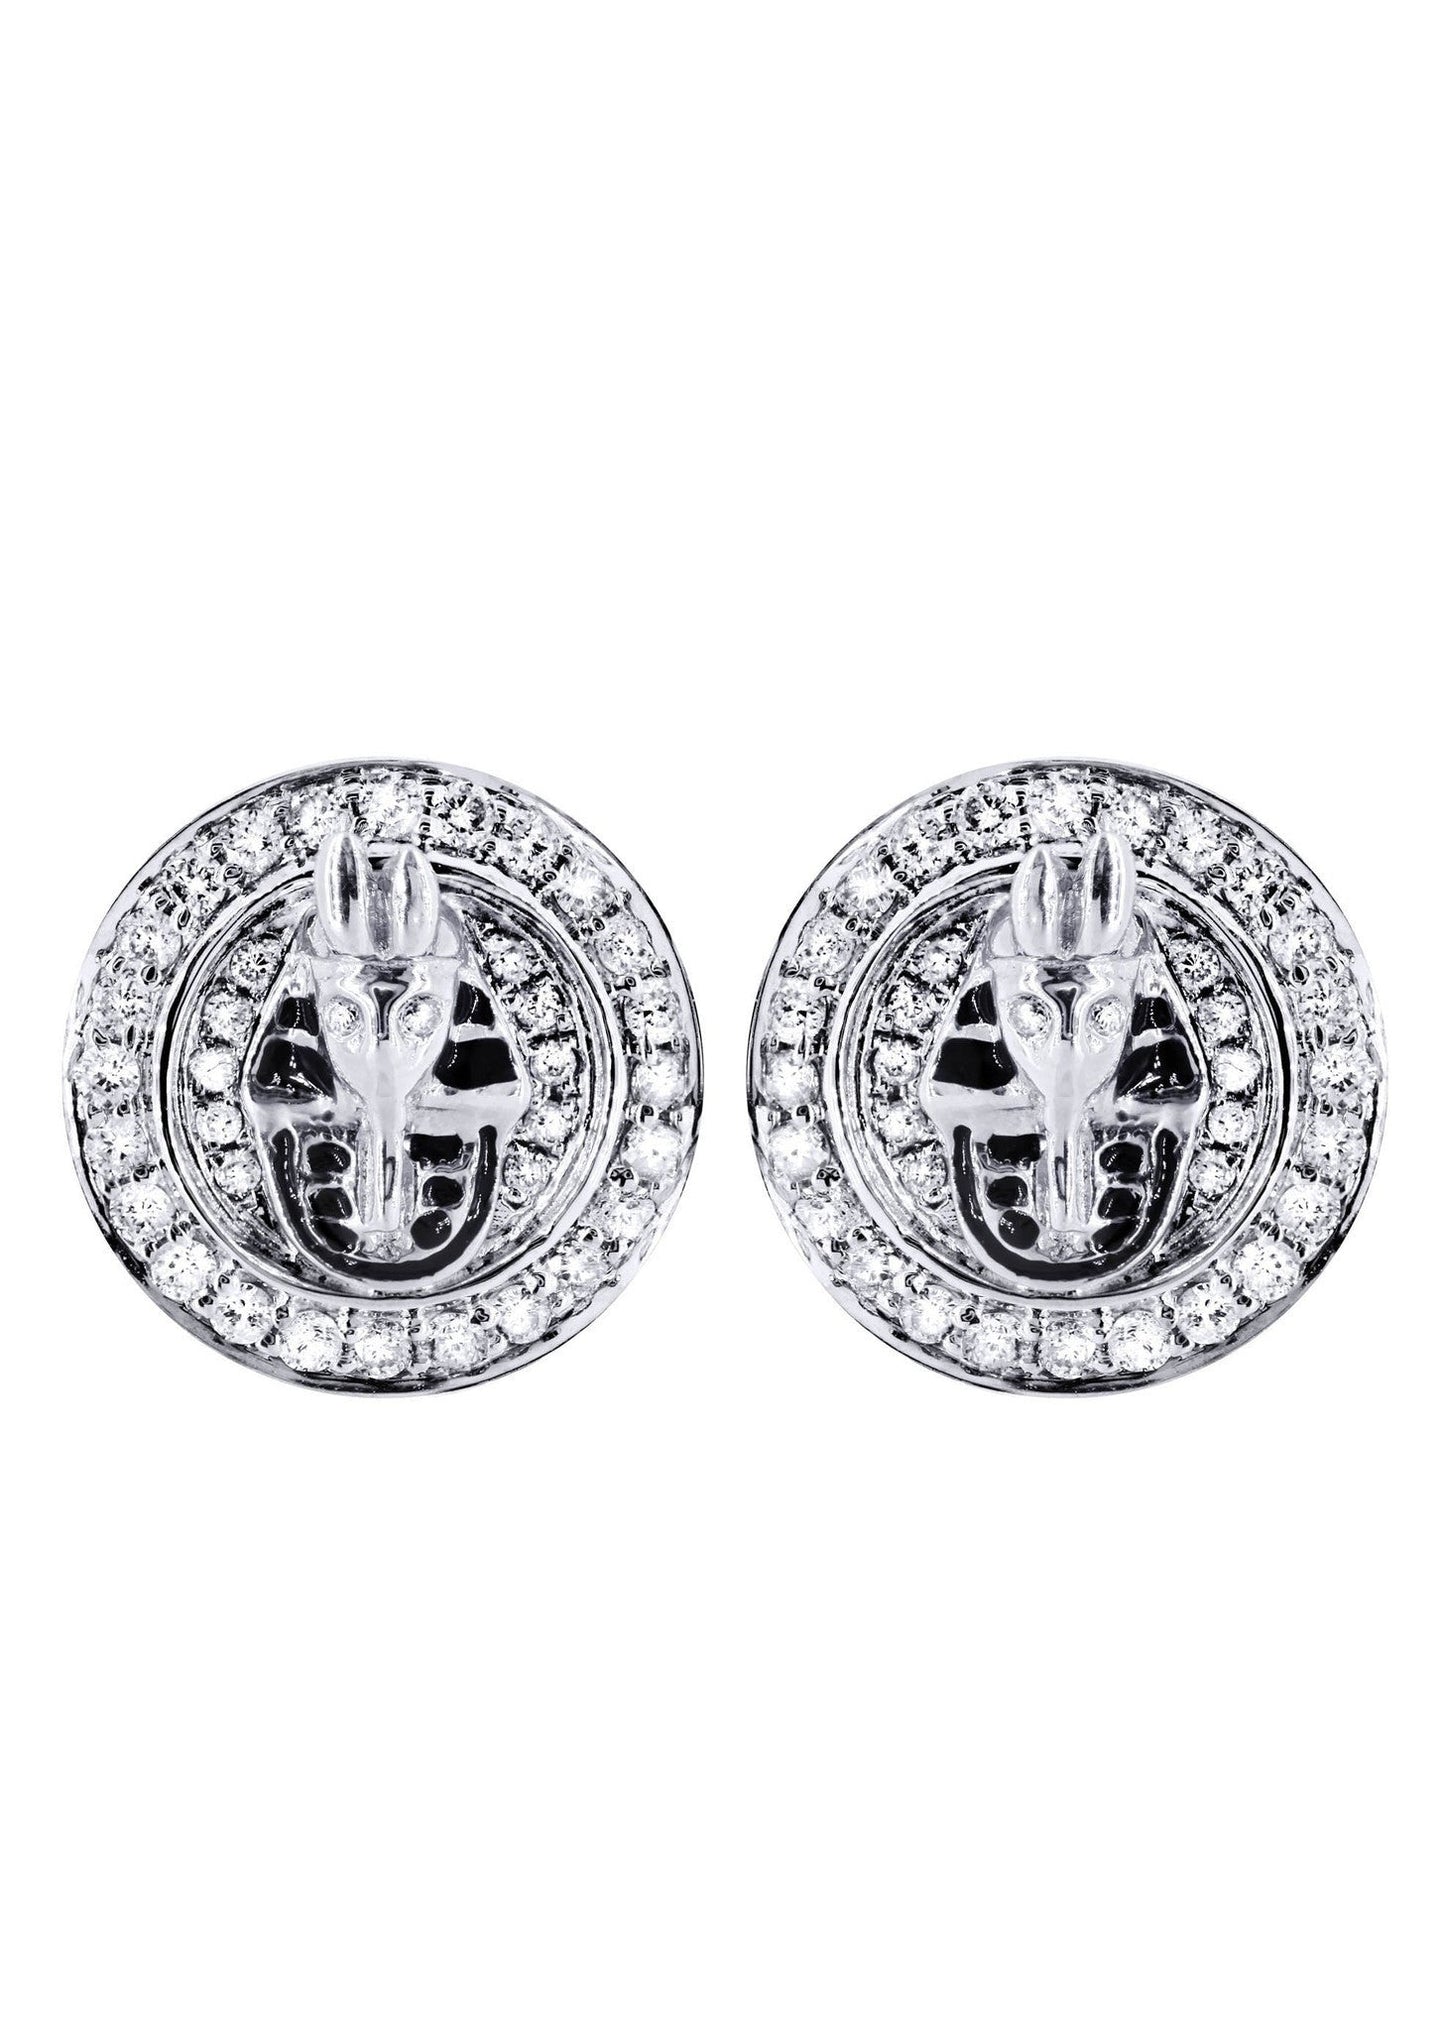 Diamond Earrings For Men |  14K White Gold  | 0.75 Carats